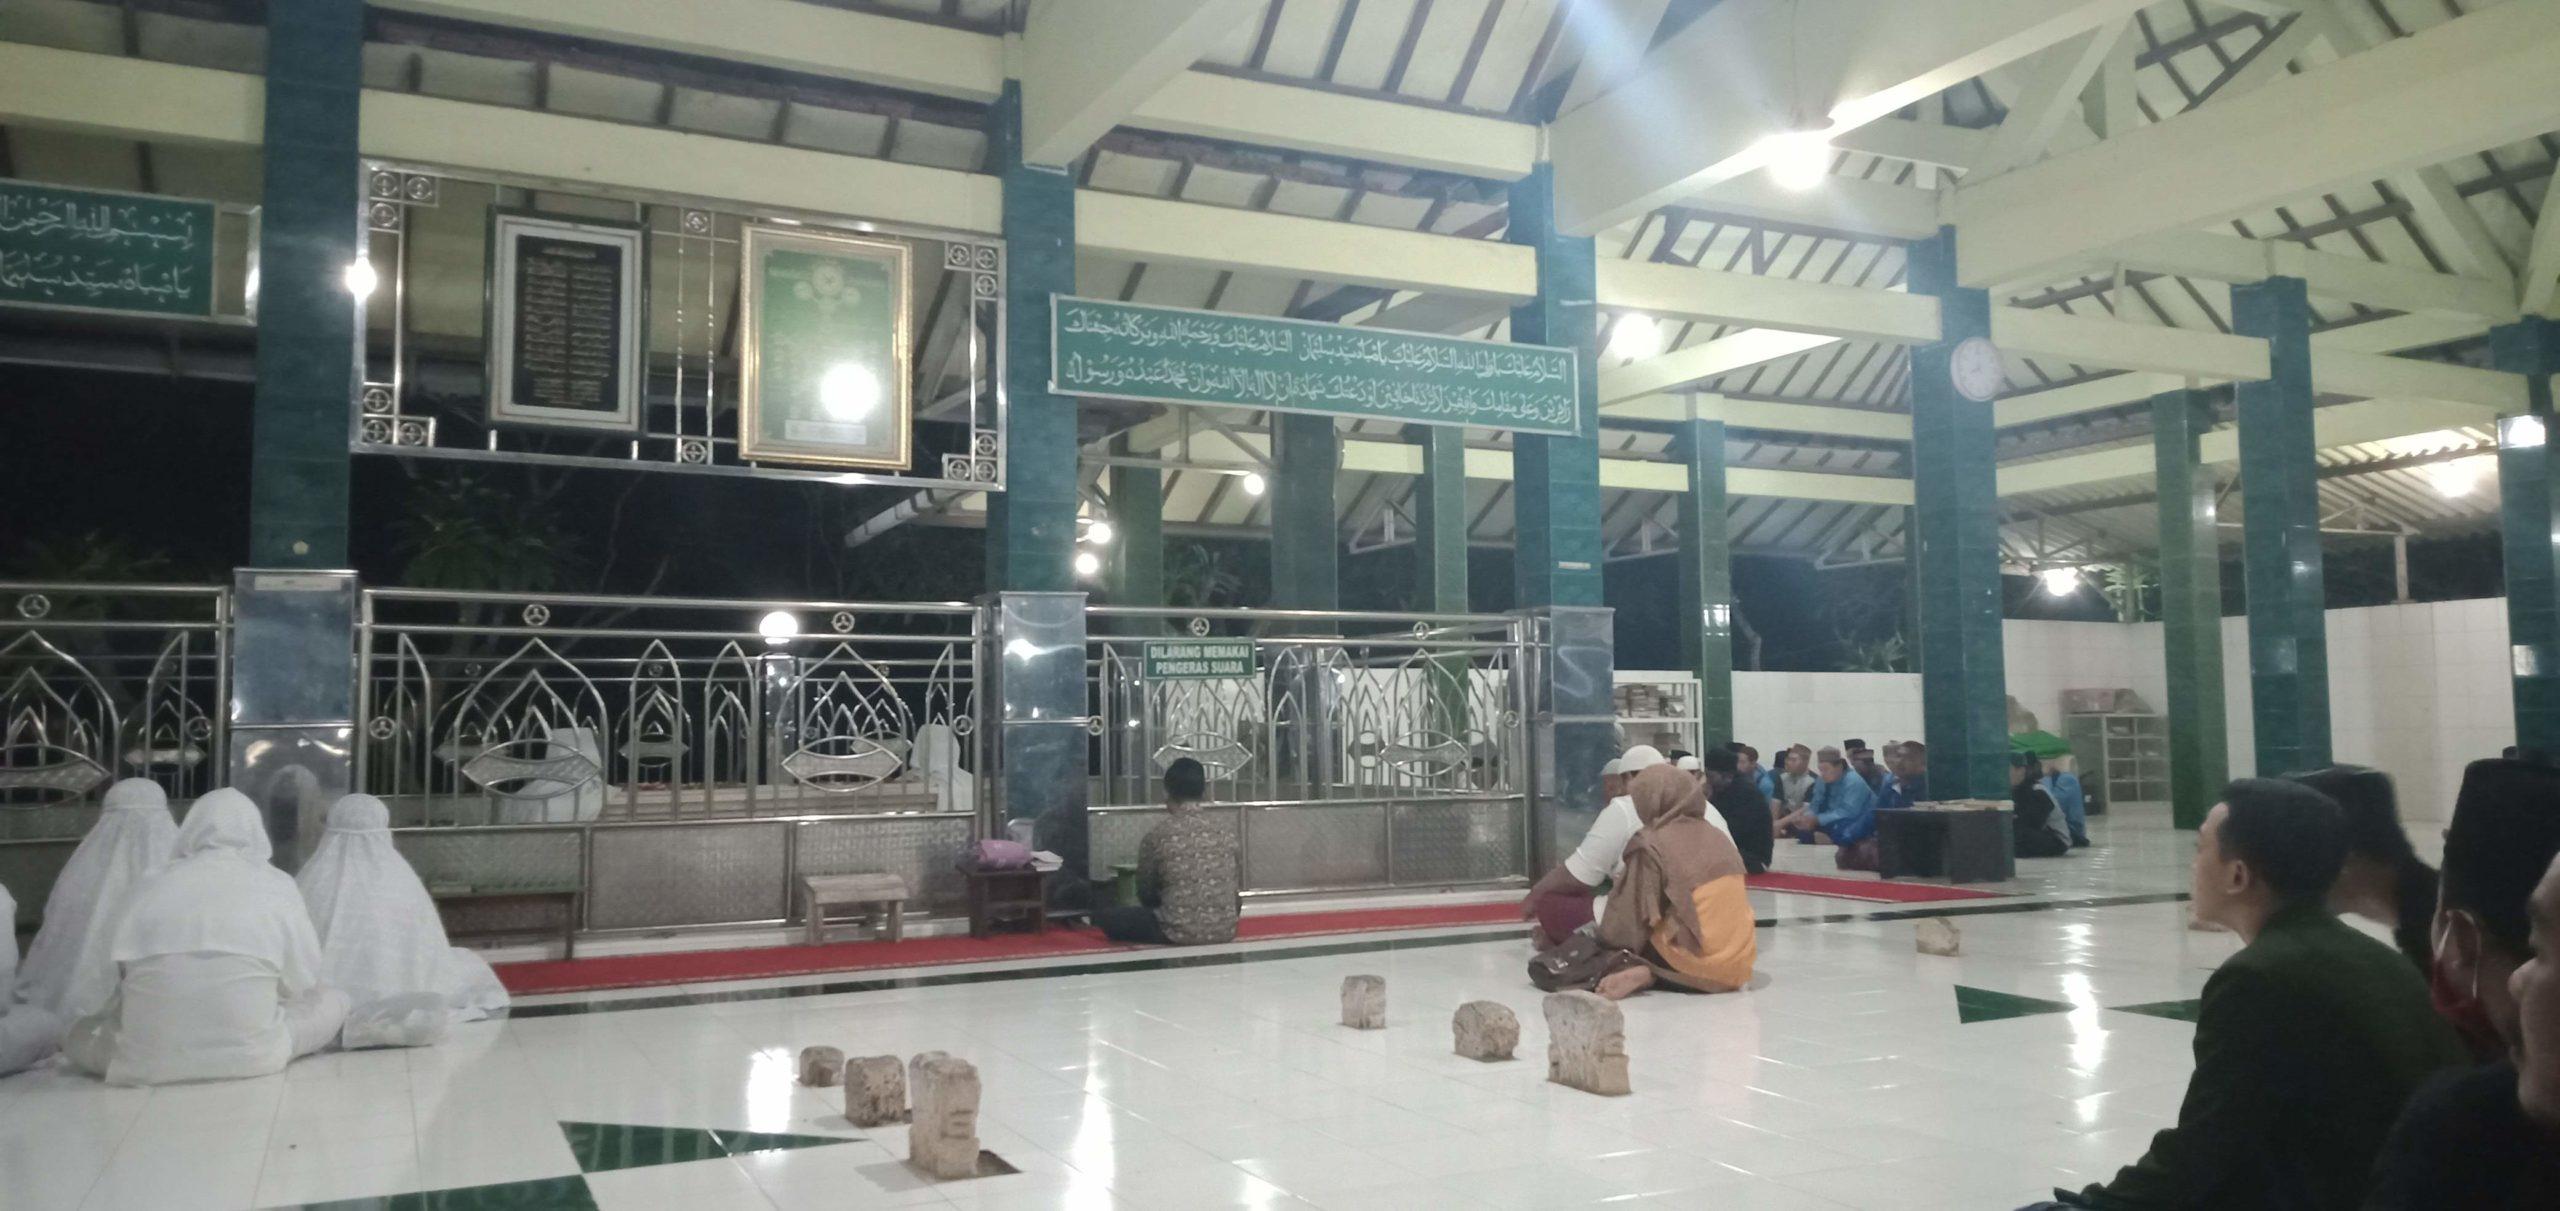 Islam masuk ke Jawa Timur